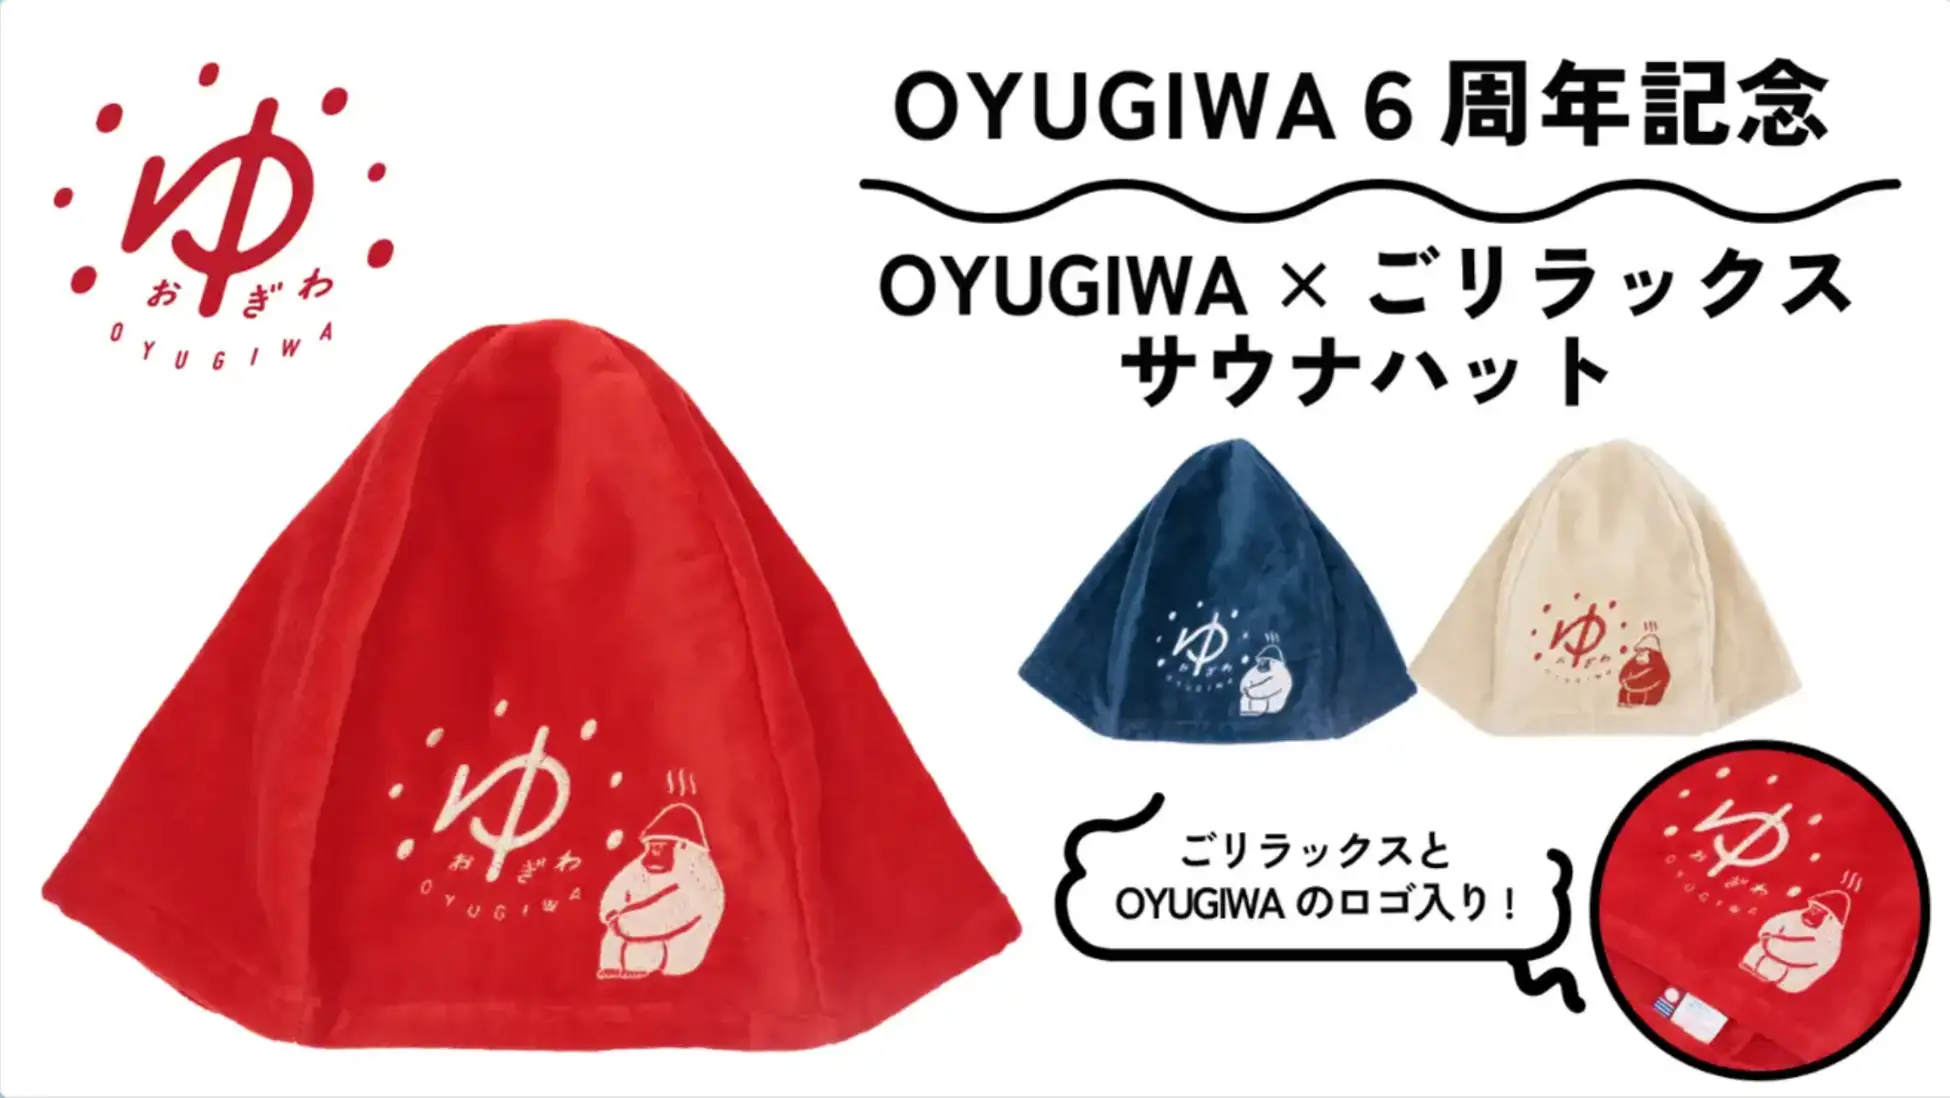 「OYUGIWA」と癒しのゴリラが人気のととのい系サウナブランド「ごリラックス」のコラボ限定グッズが新発売！